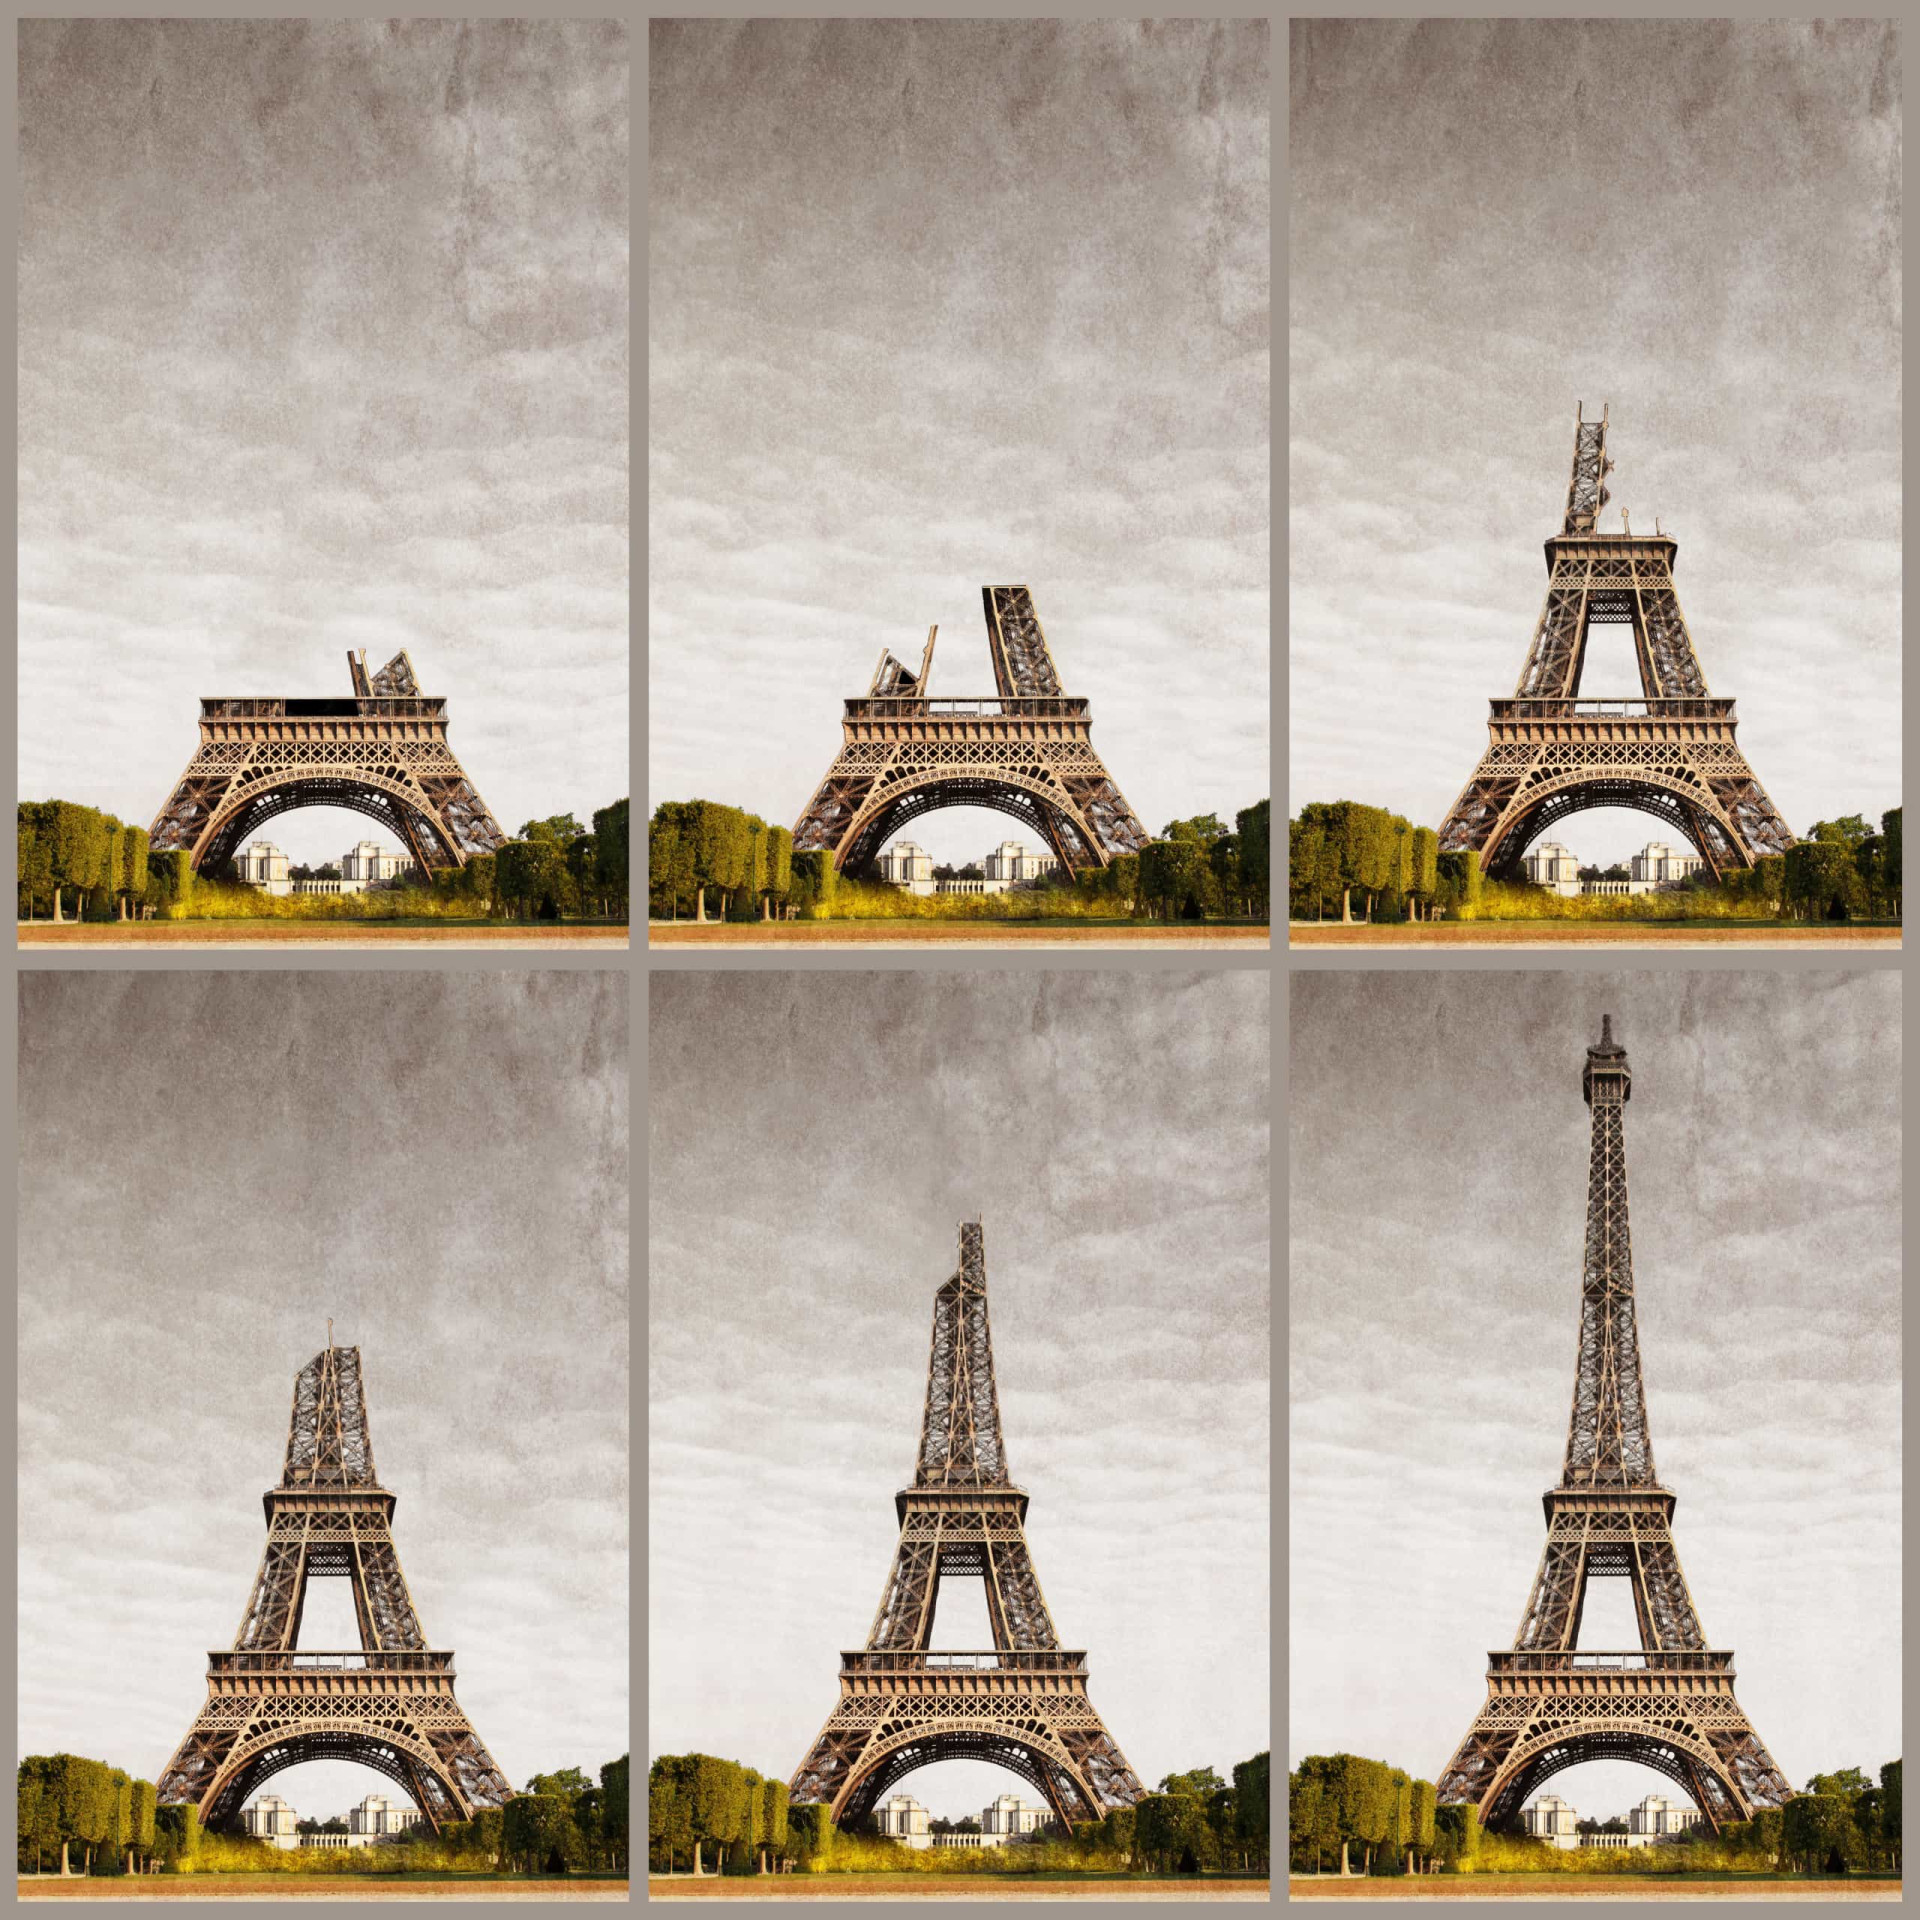 Avec une moyenne de 7 millions de visiteurs par an, la Tour Eiffel est le quatrième <a href="https://www.starsinsider.com/fr/travel/214704/arcs-et-aqueducs-du-monde-un-heritage-admirable" rel="noopener">monument </a>le plus visité de Paris. Pourtant, ce symbole français n'avait pas été conçu pour une installation définitive mais dans le cadre de l'exposition universelle de Paris en 1889 à l'occasion du centenaire de la révolution française. Elle devait rester 20 ans mais son succès puis son utilisation à des fins scientifiques en décideront autrement. Découvrez la grande Dame de Fer d'hier lors de sa construction, et d'aujourd'hui lors des différents événements qui ont marqué la France. <p>Tu pourrais aussi aimer:<a href="https://www.starsinsider.com/n/189896?utm_source=msn.com&utm_medium=display&utm_campaign=referral_description&utm_content=144117v2"> Les volcans d'Auvergne, un trésor géologique français </a></p>